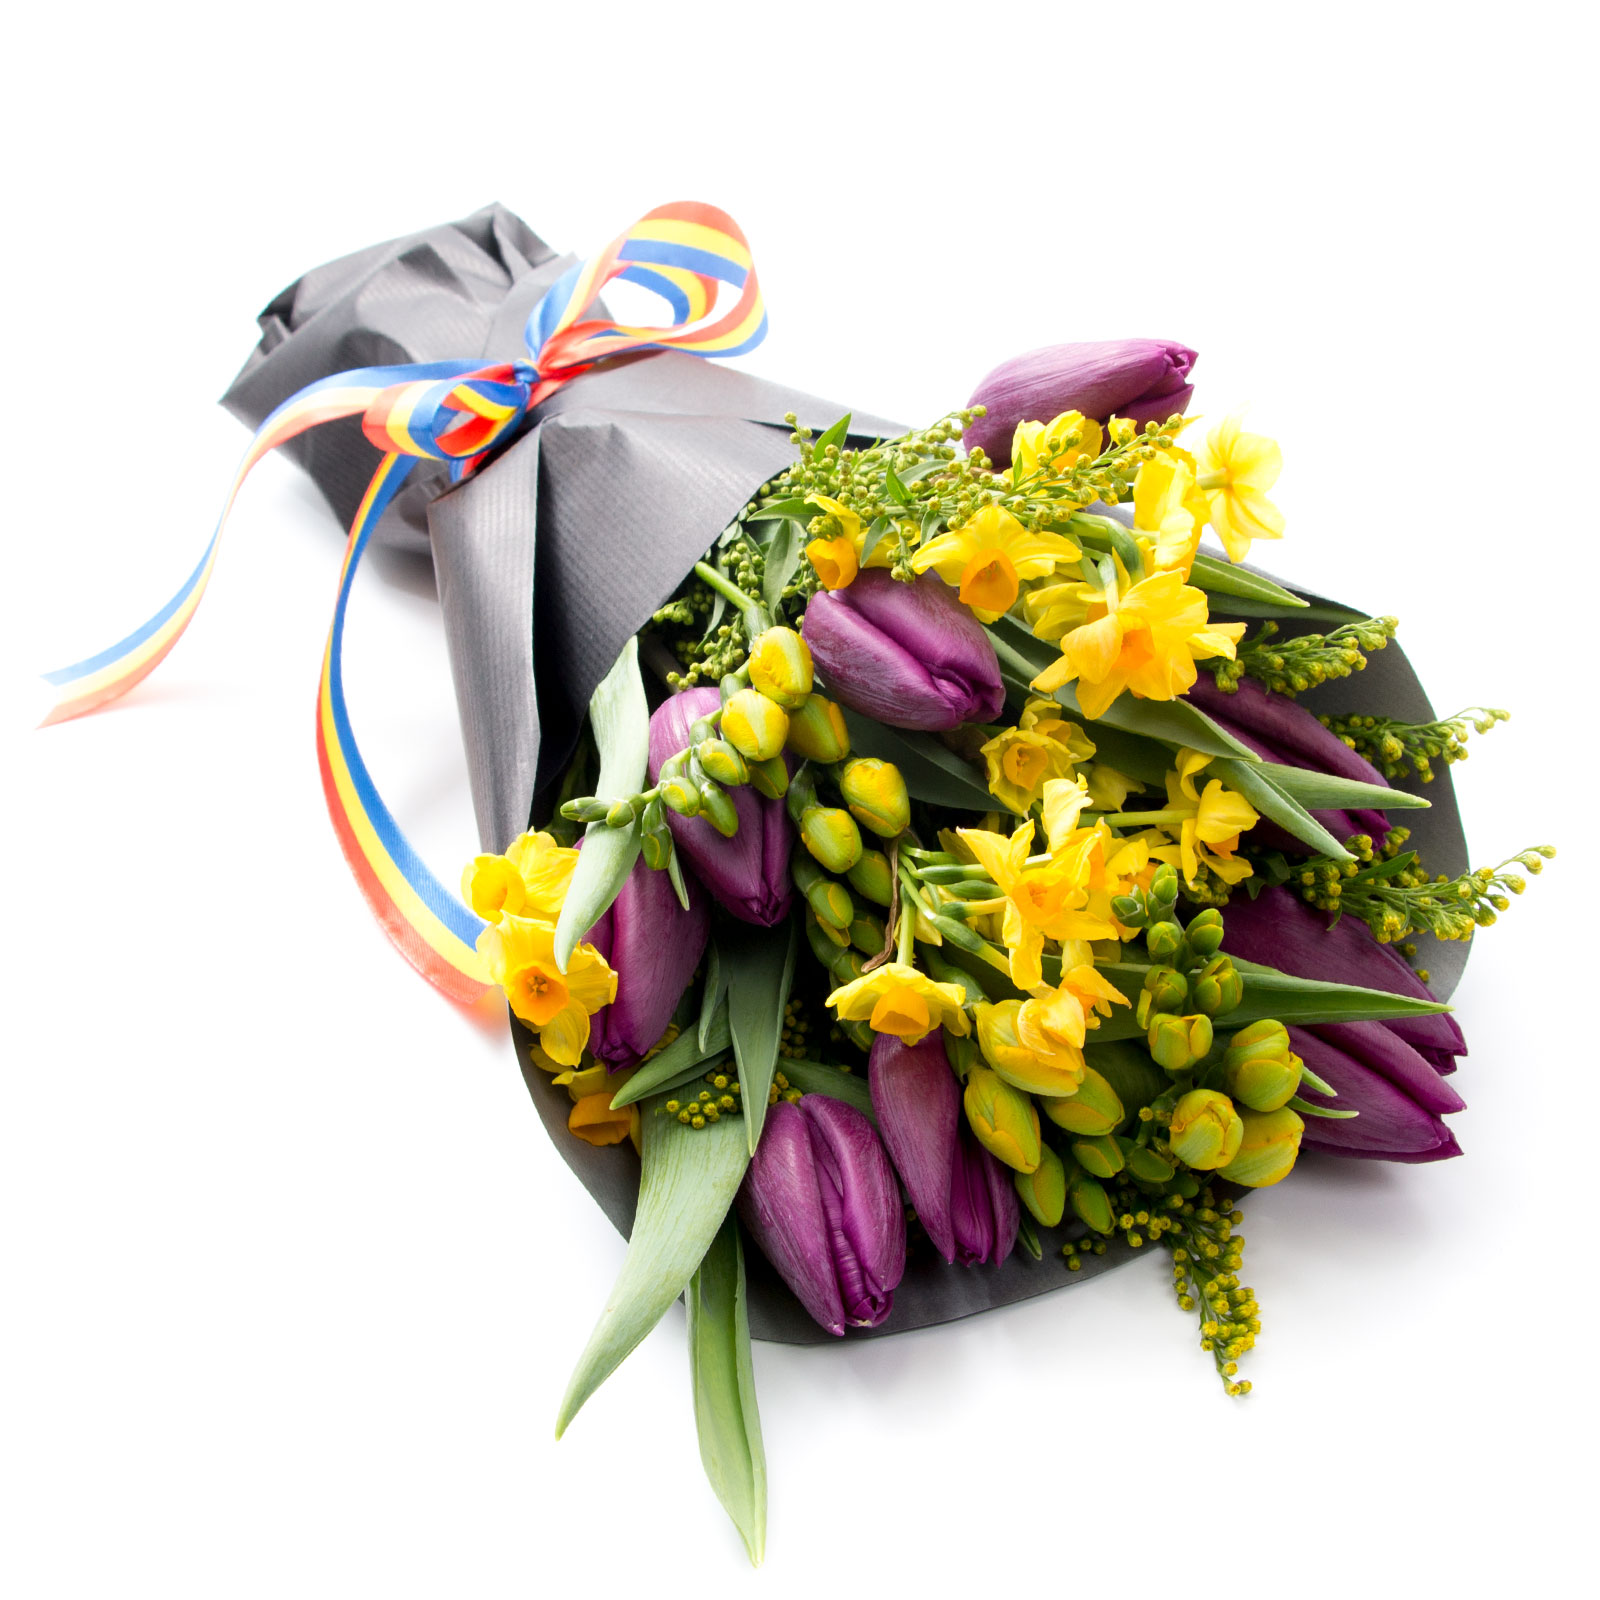 cadou pentru Craciun 2010, buchet de flori multicolor